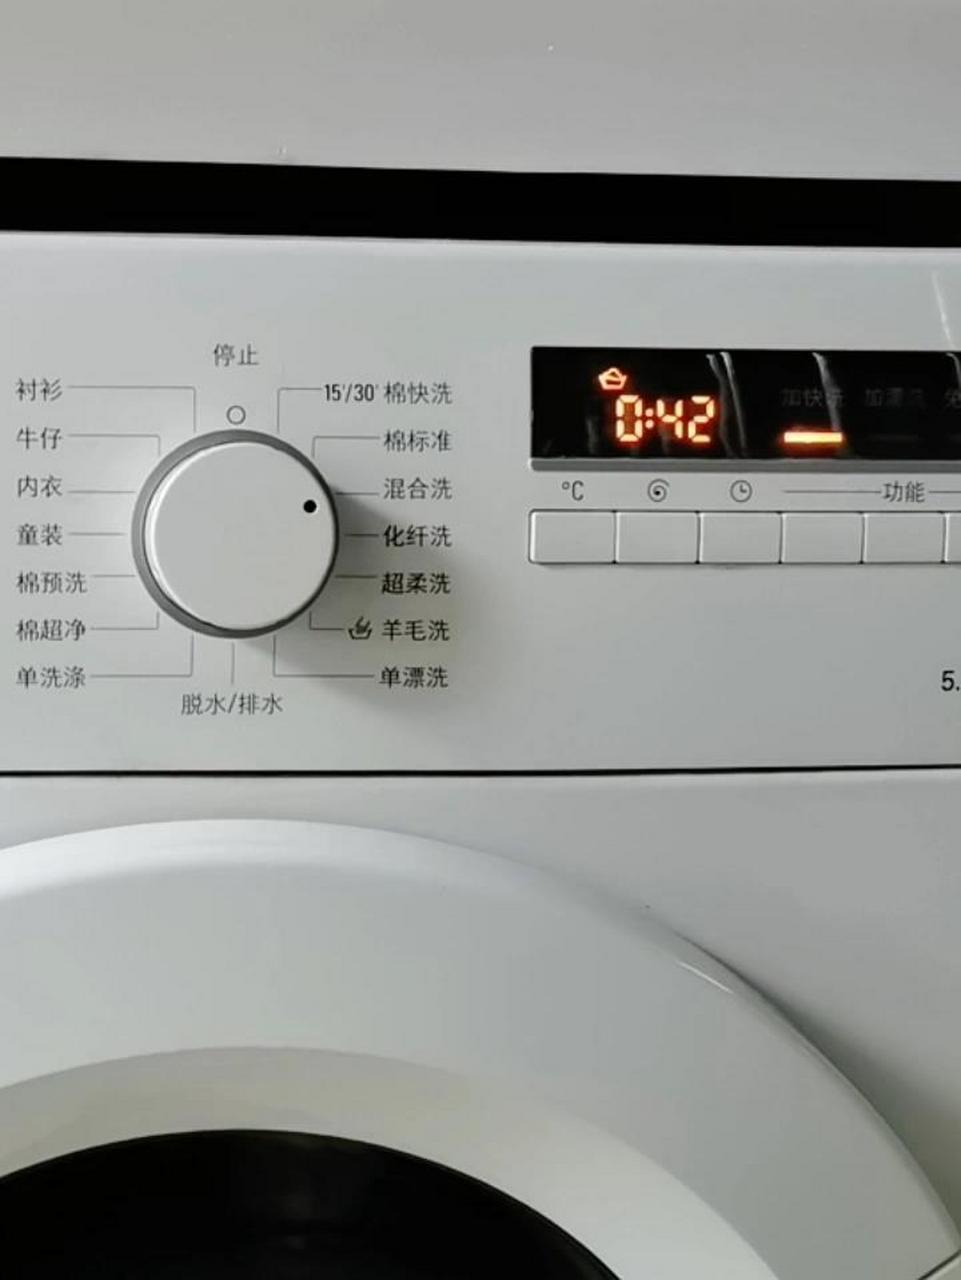 西门子洗衣机童锁怎么开 今天洗衣机关不上了钥匙标志一直在闪烁,查了